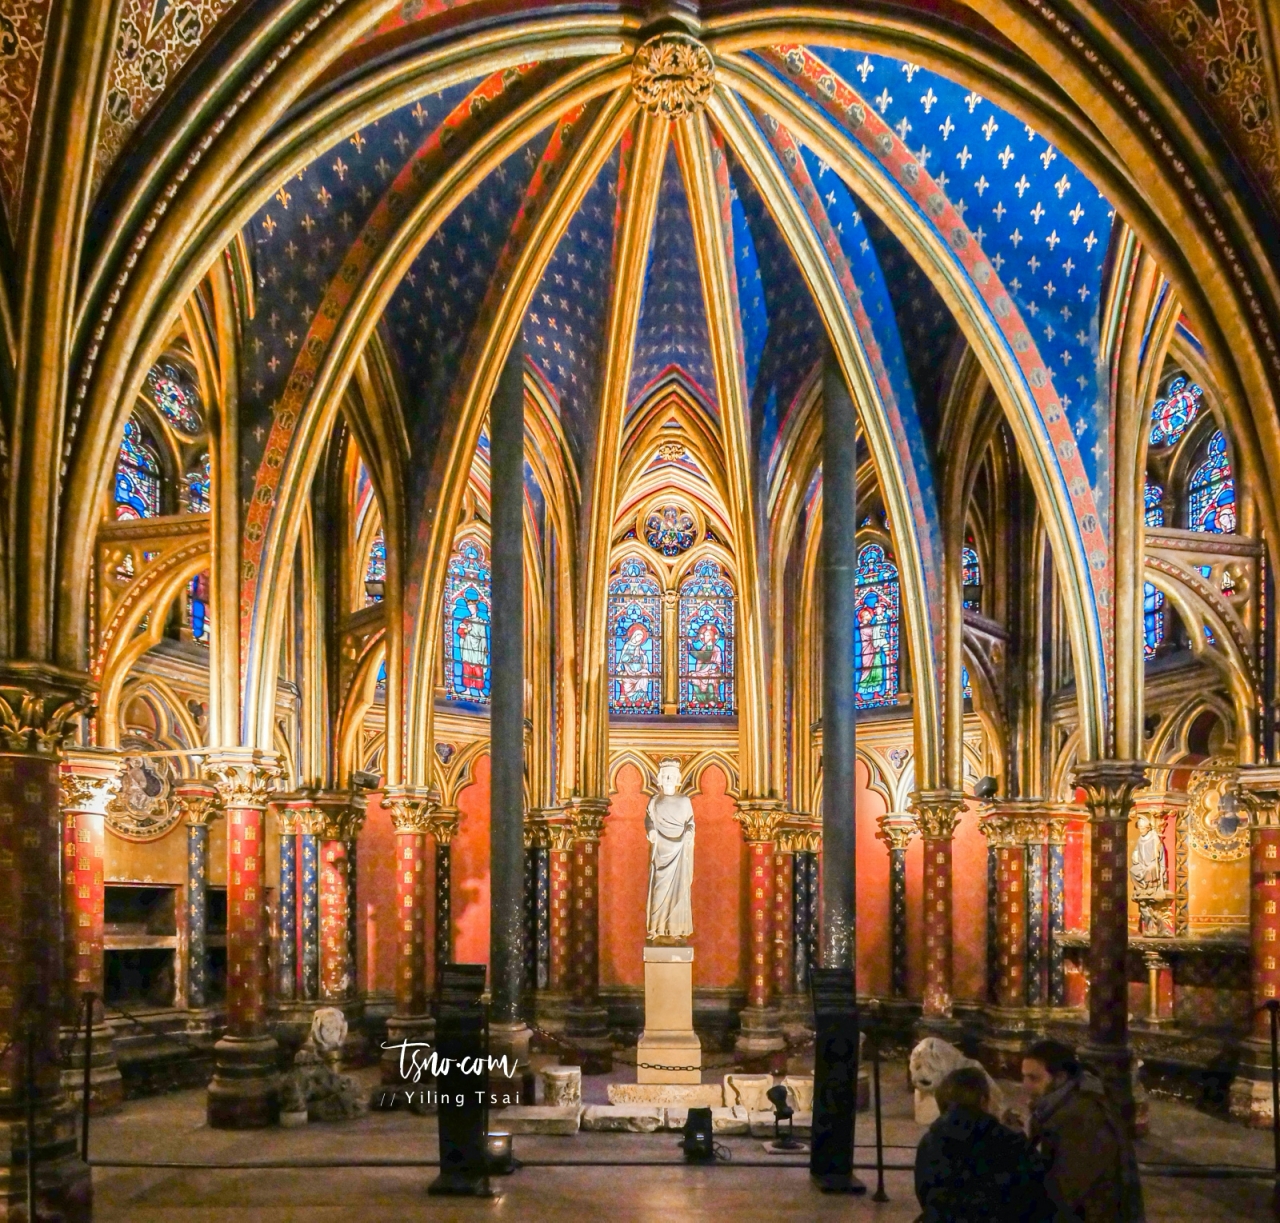 法國巴黎景點 聖徒禮拜堂 Sainte Chapelle 瑰麗璀璨哥德式彩繪玻璃